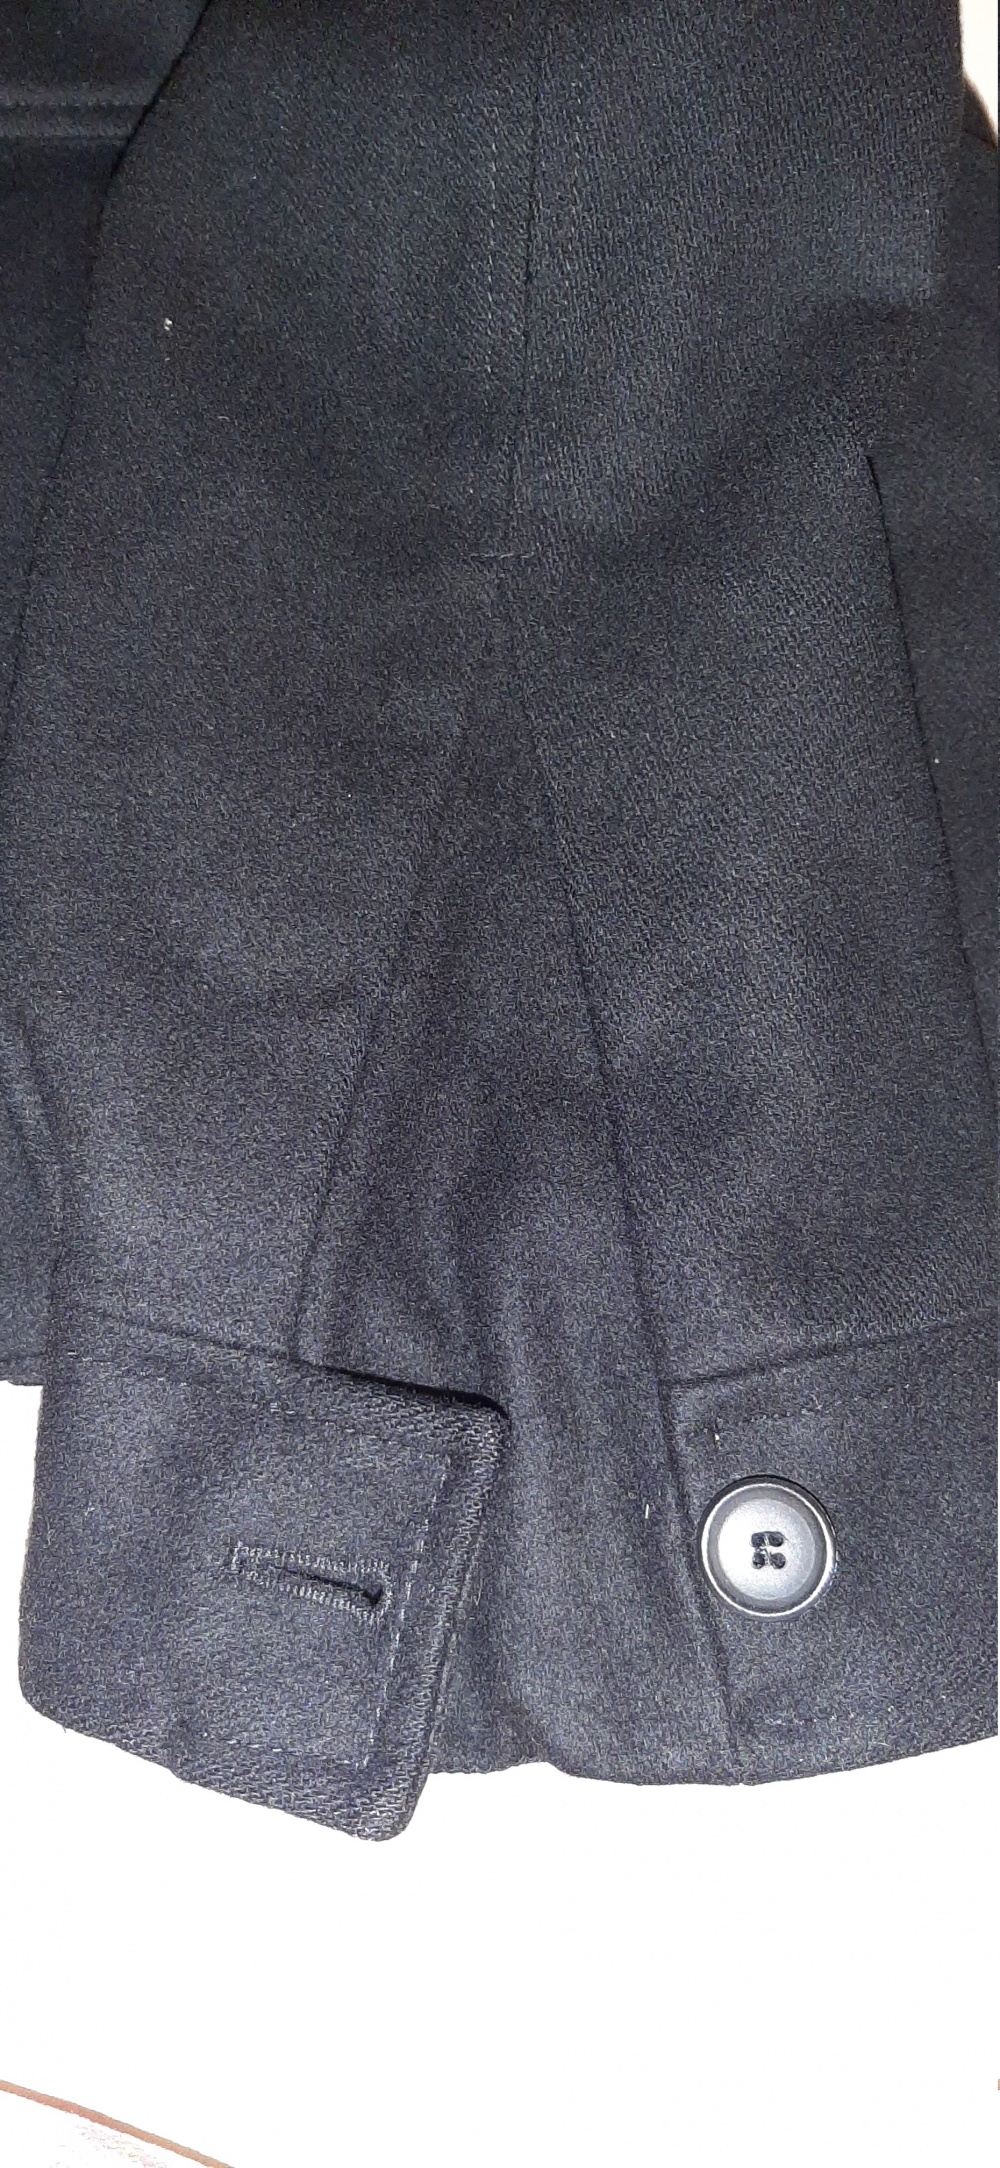 Кашемировое пальто Bruuns Bazaar, евр.38, наш 44